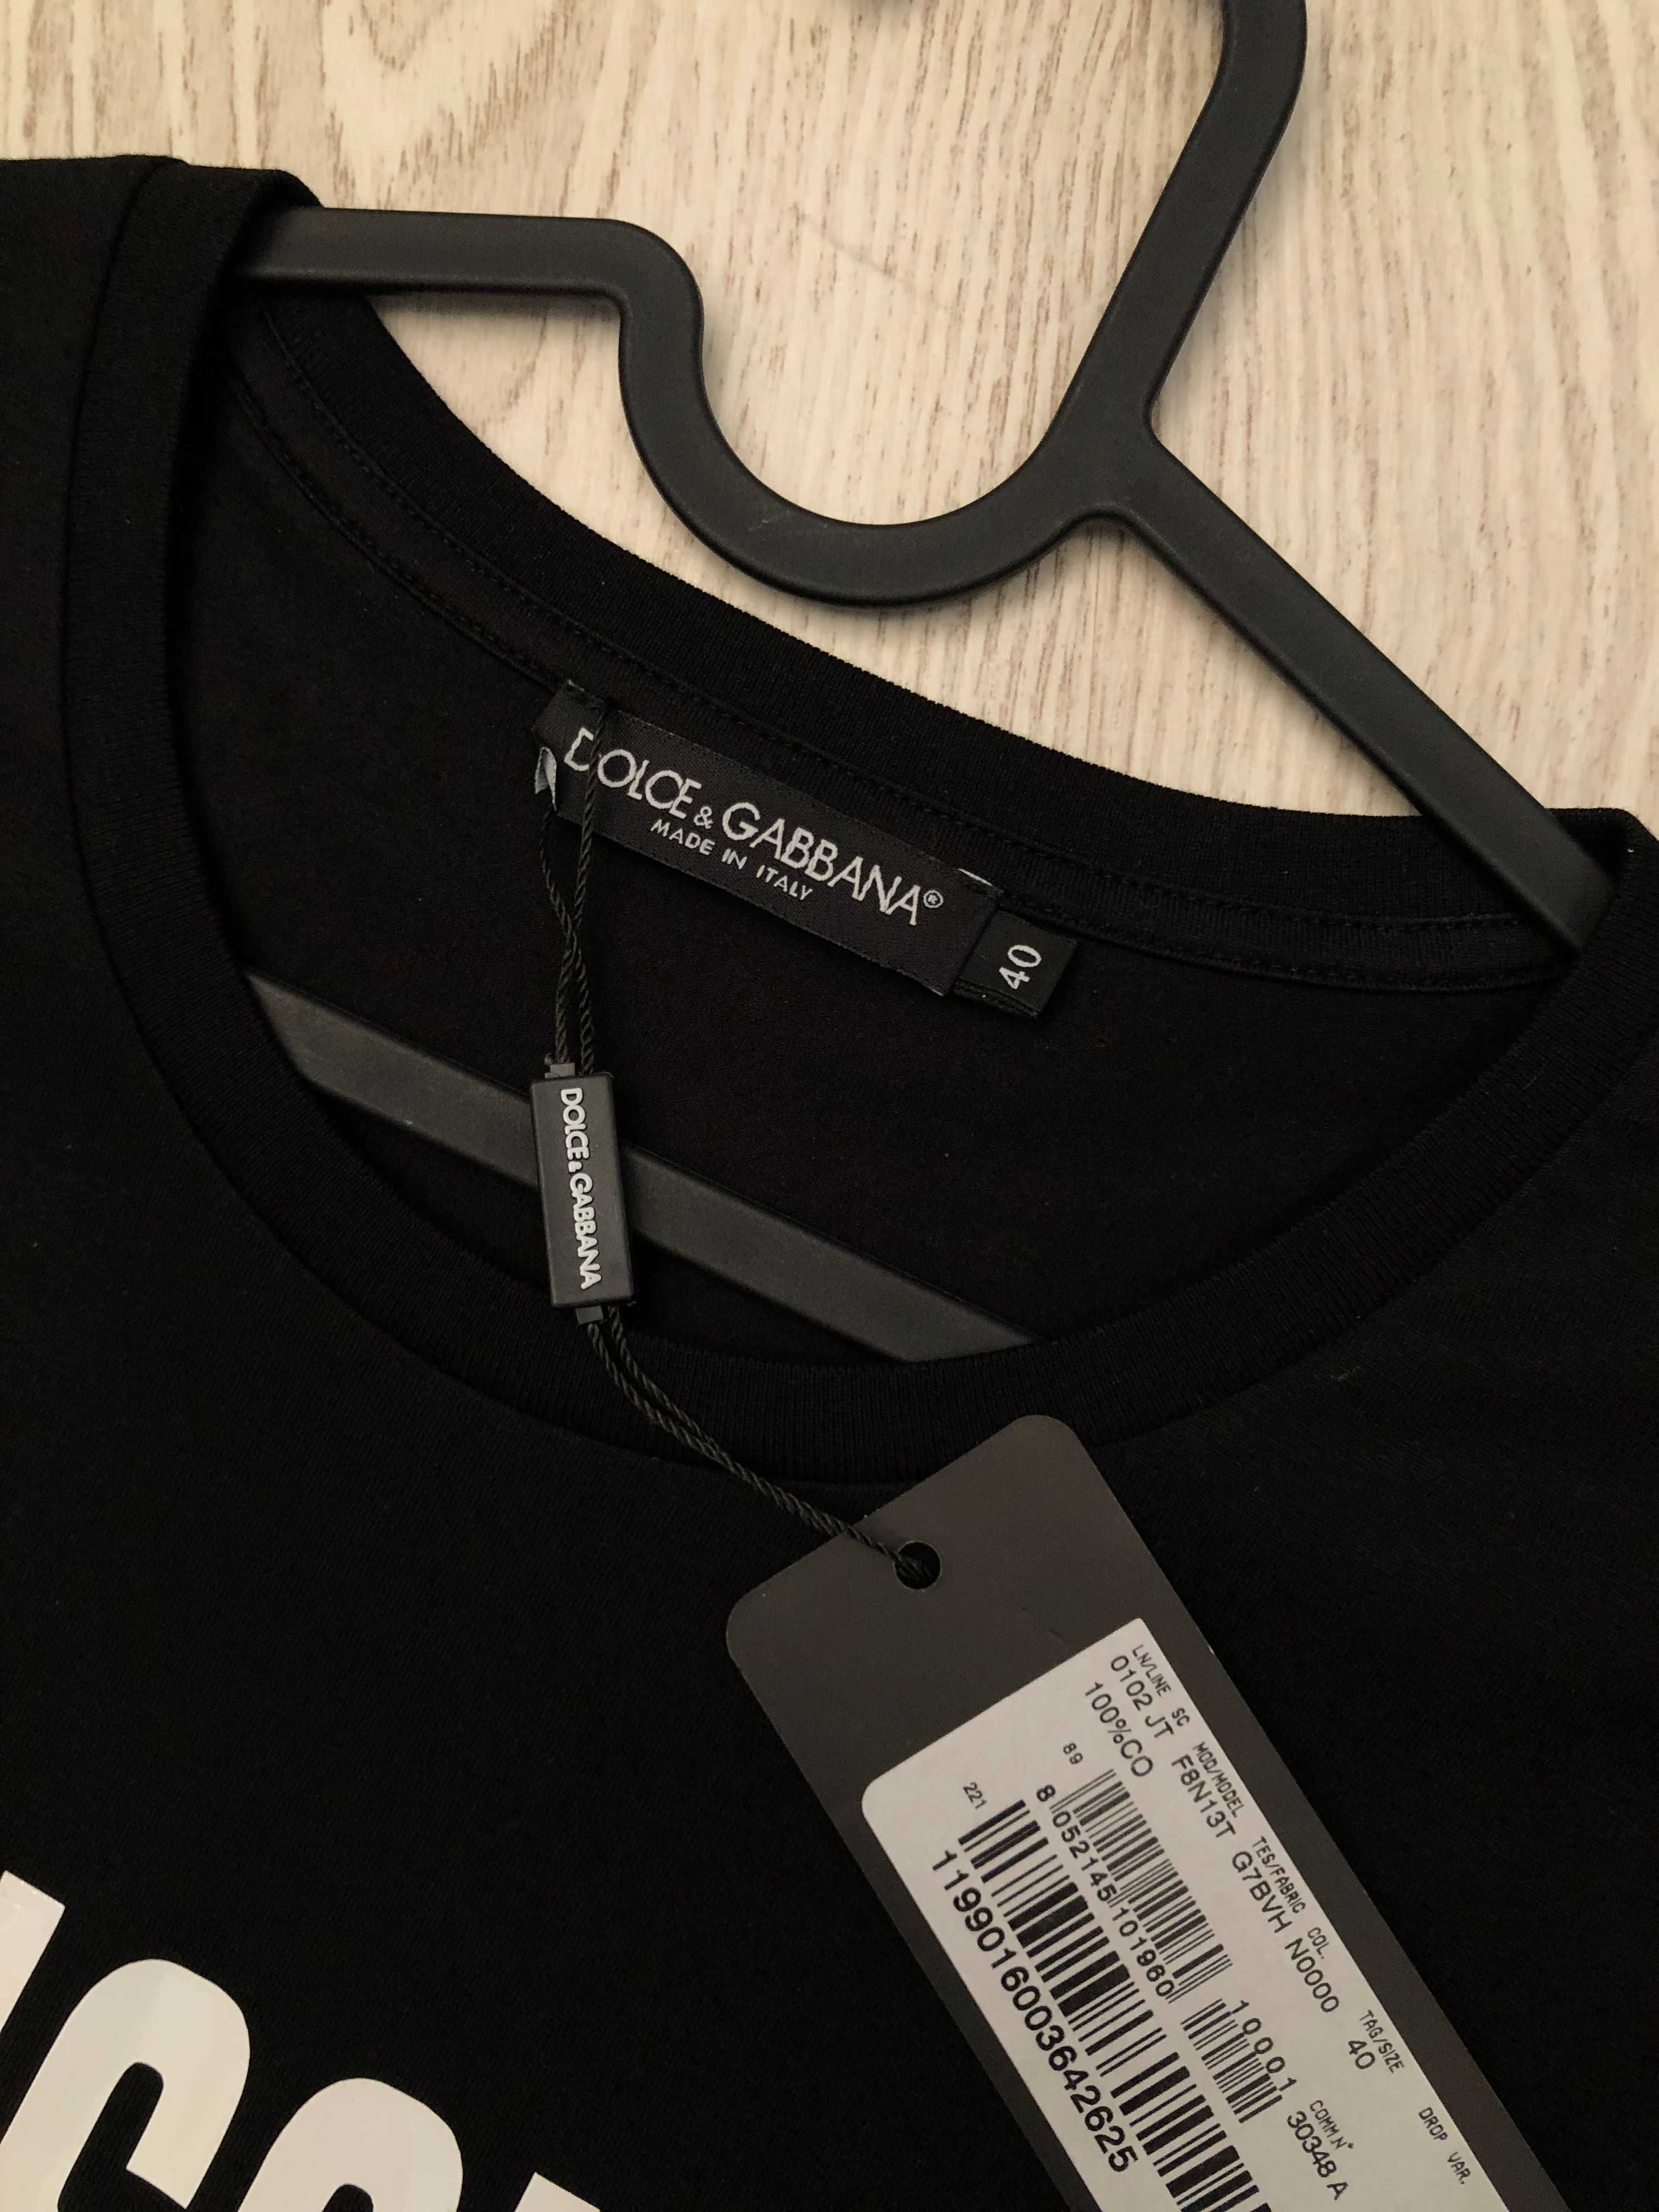 Dolce Gabbana tricou S-M-L dama, autentIc, retail price 295 euro